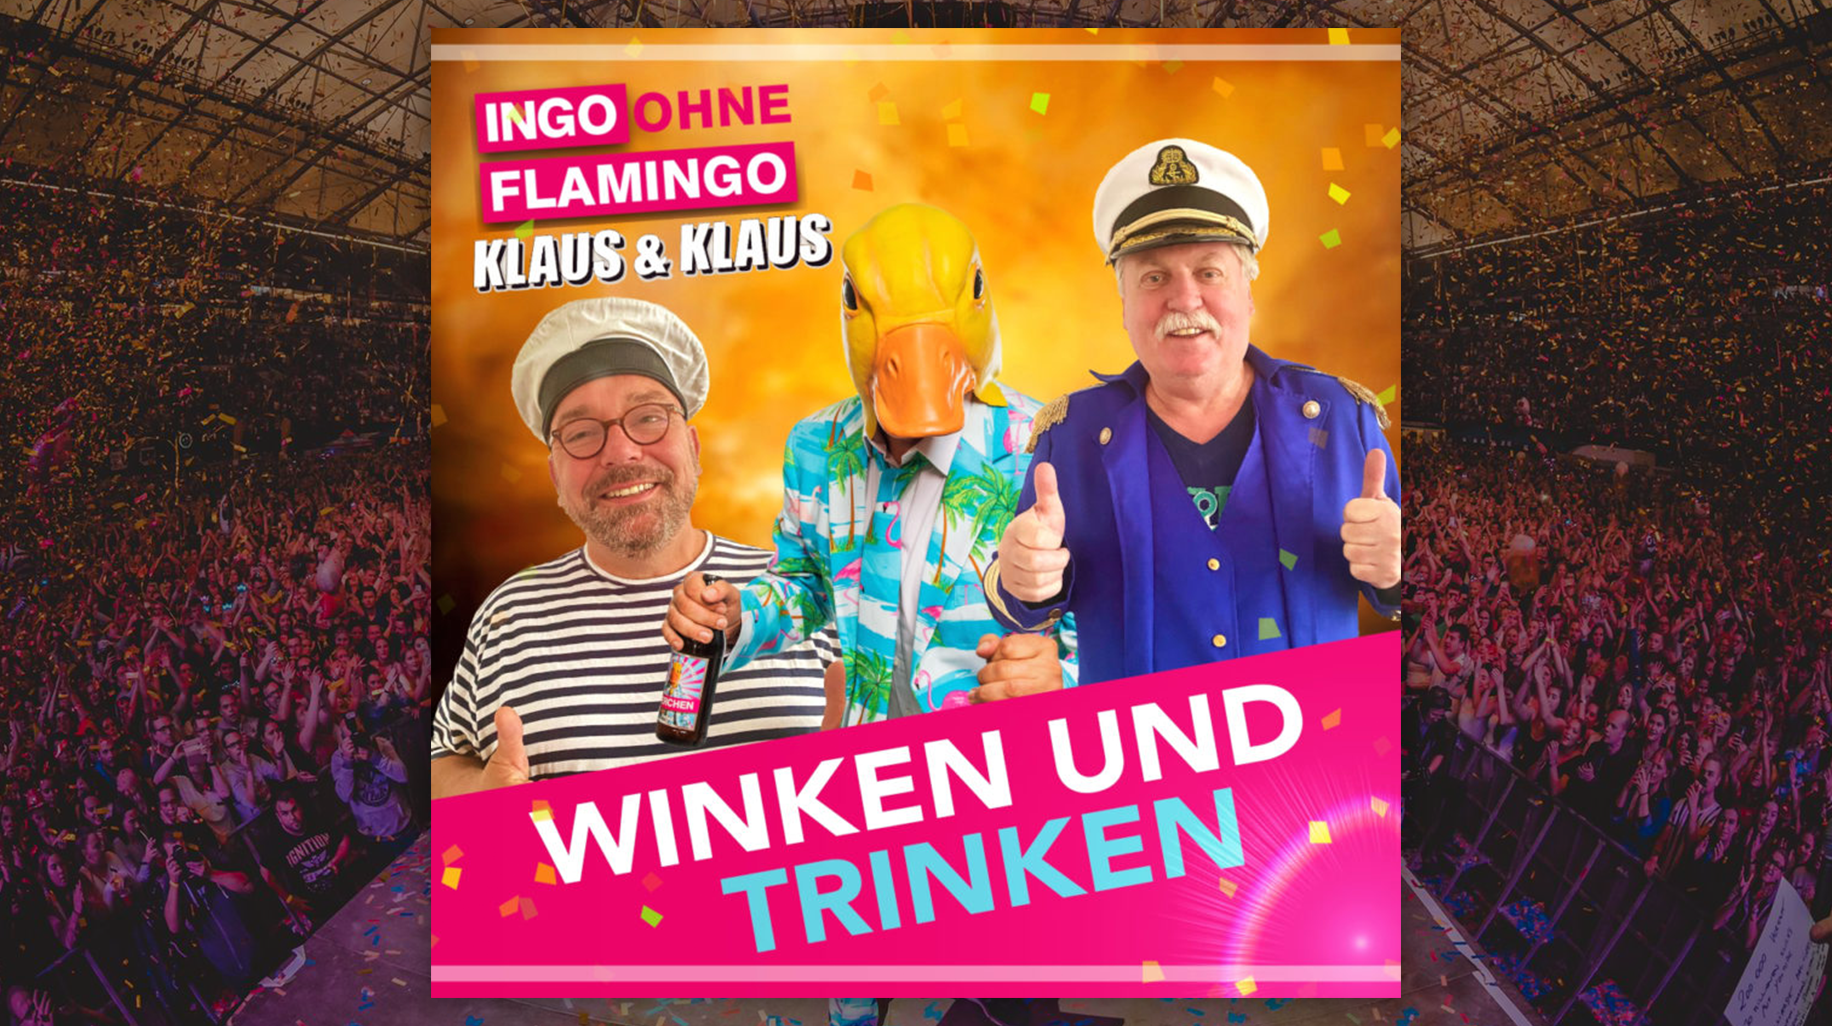 Ingo ohne Flamingo singt mit KLAUS&KLAUS "Winken und Trinken"